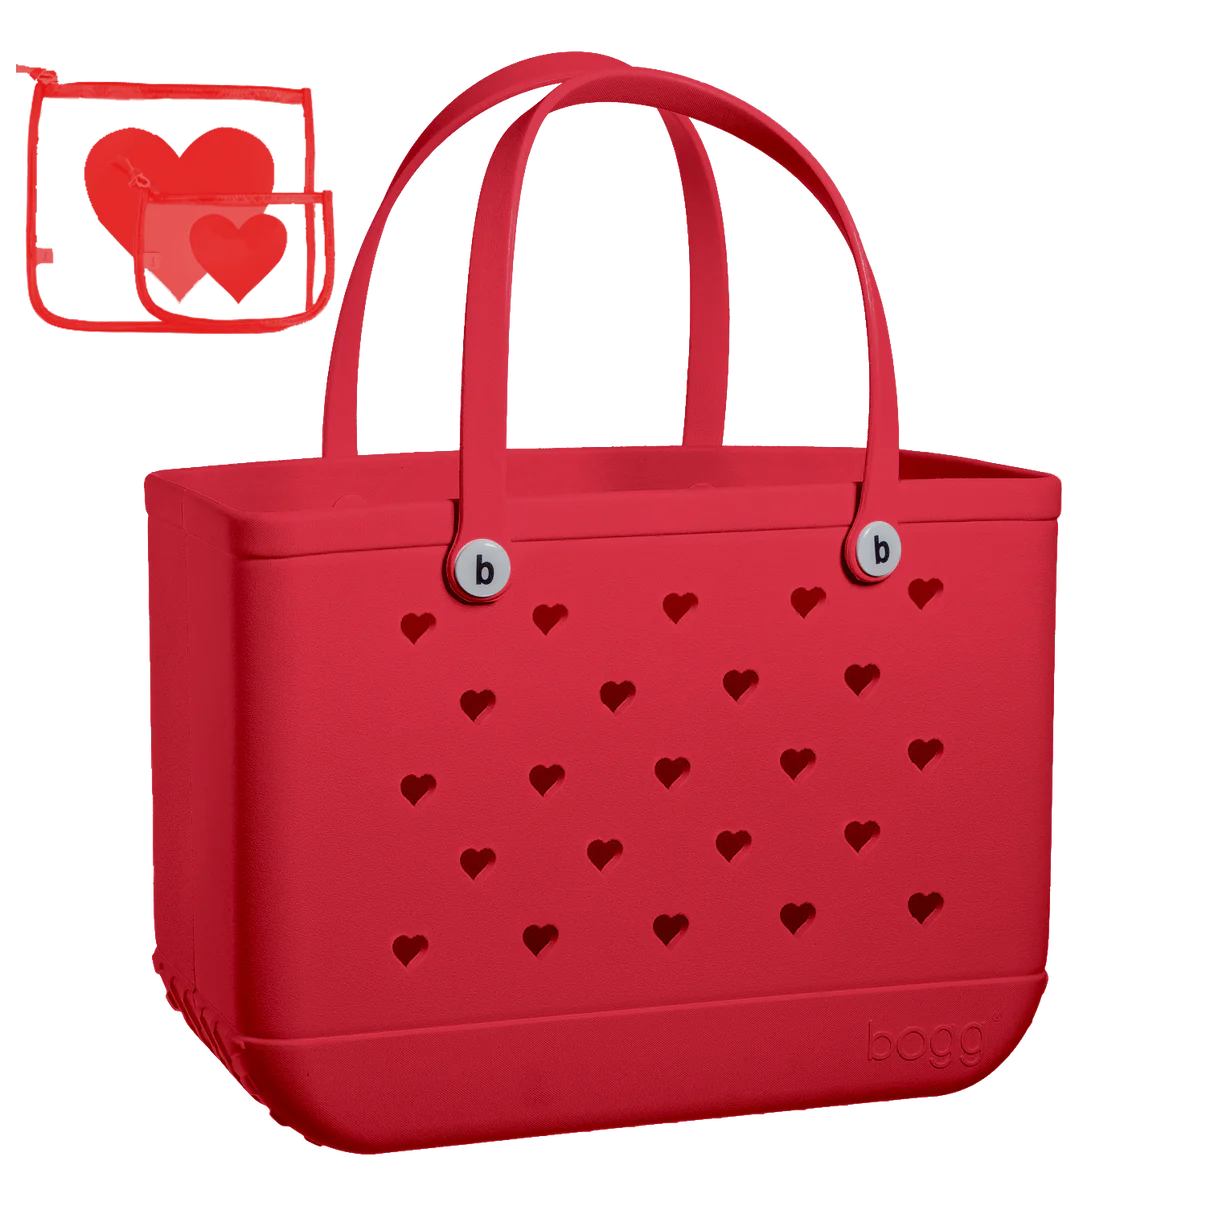 Red Love Original Bogg Bag